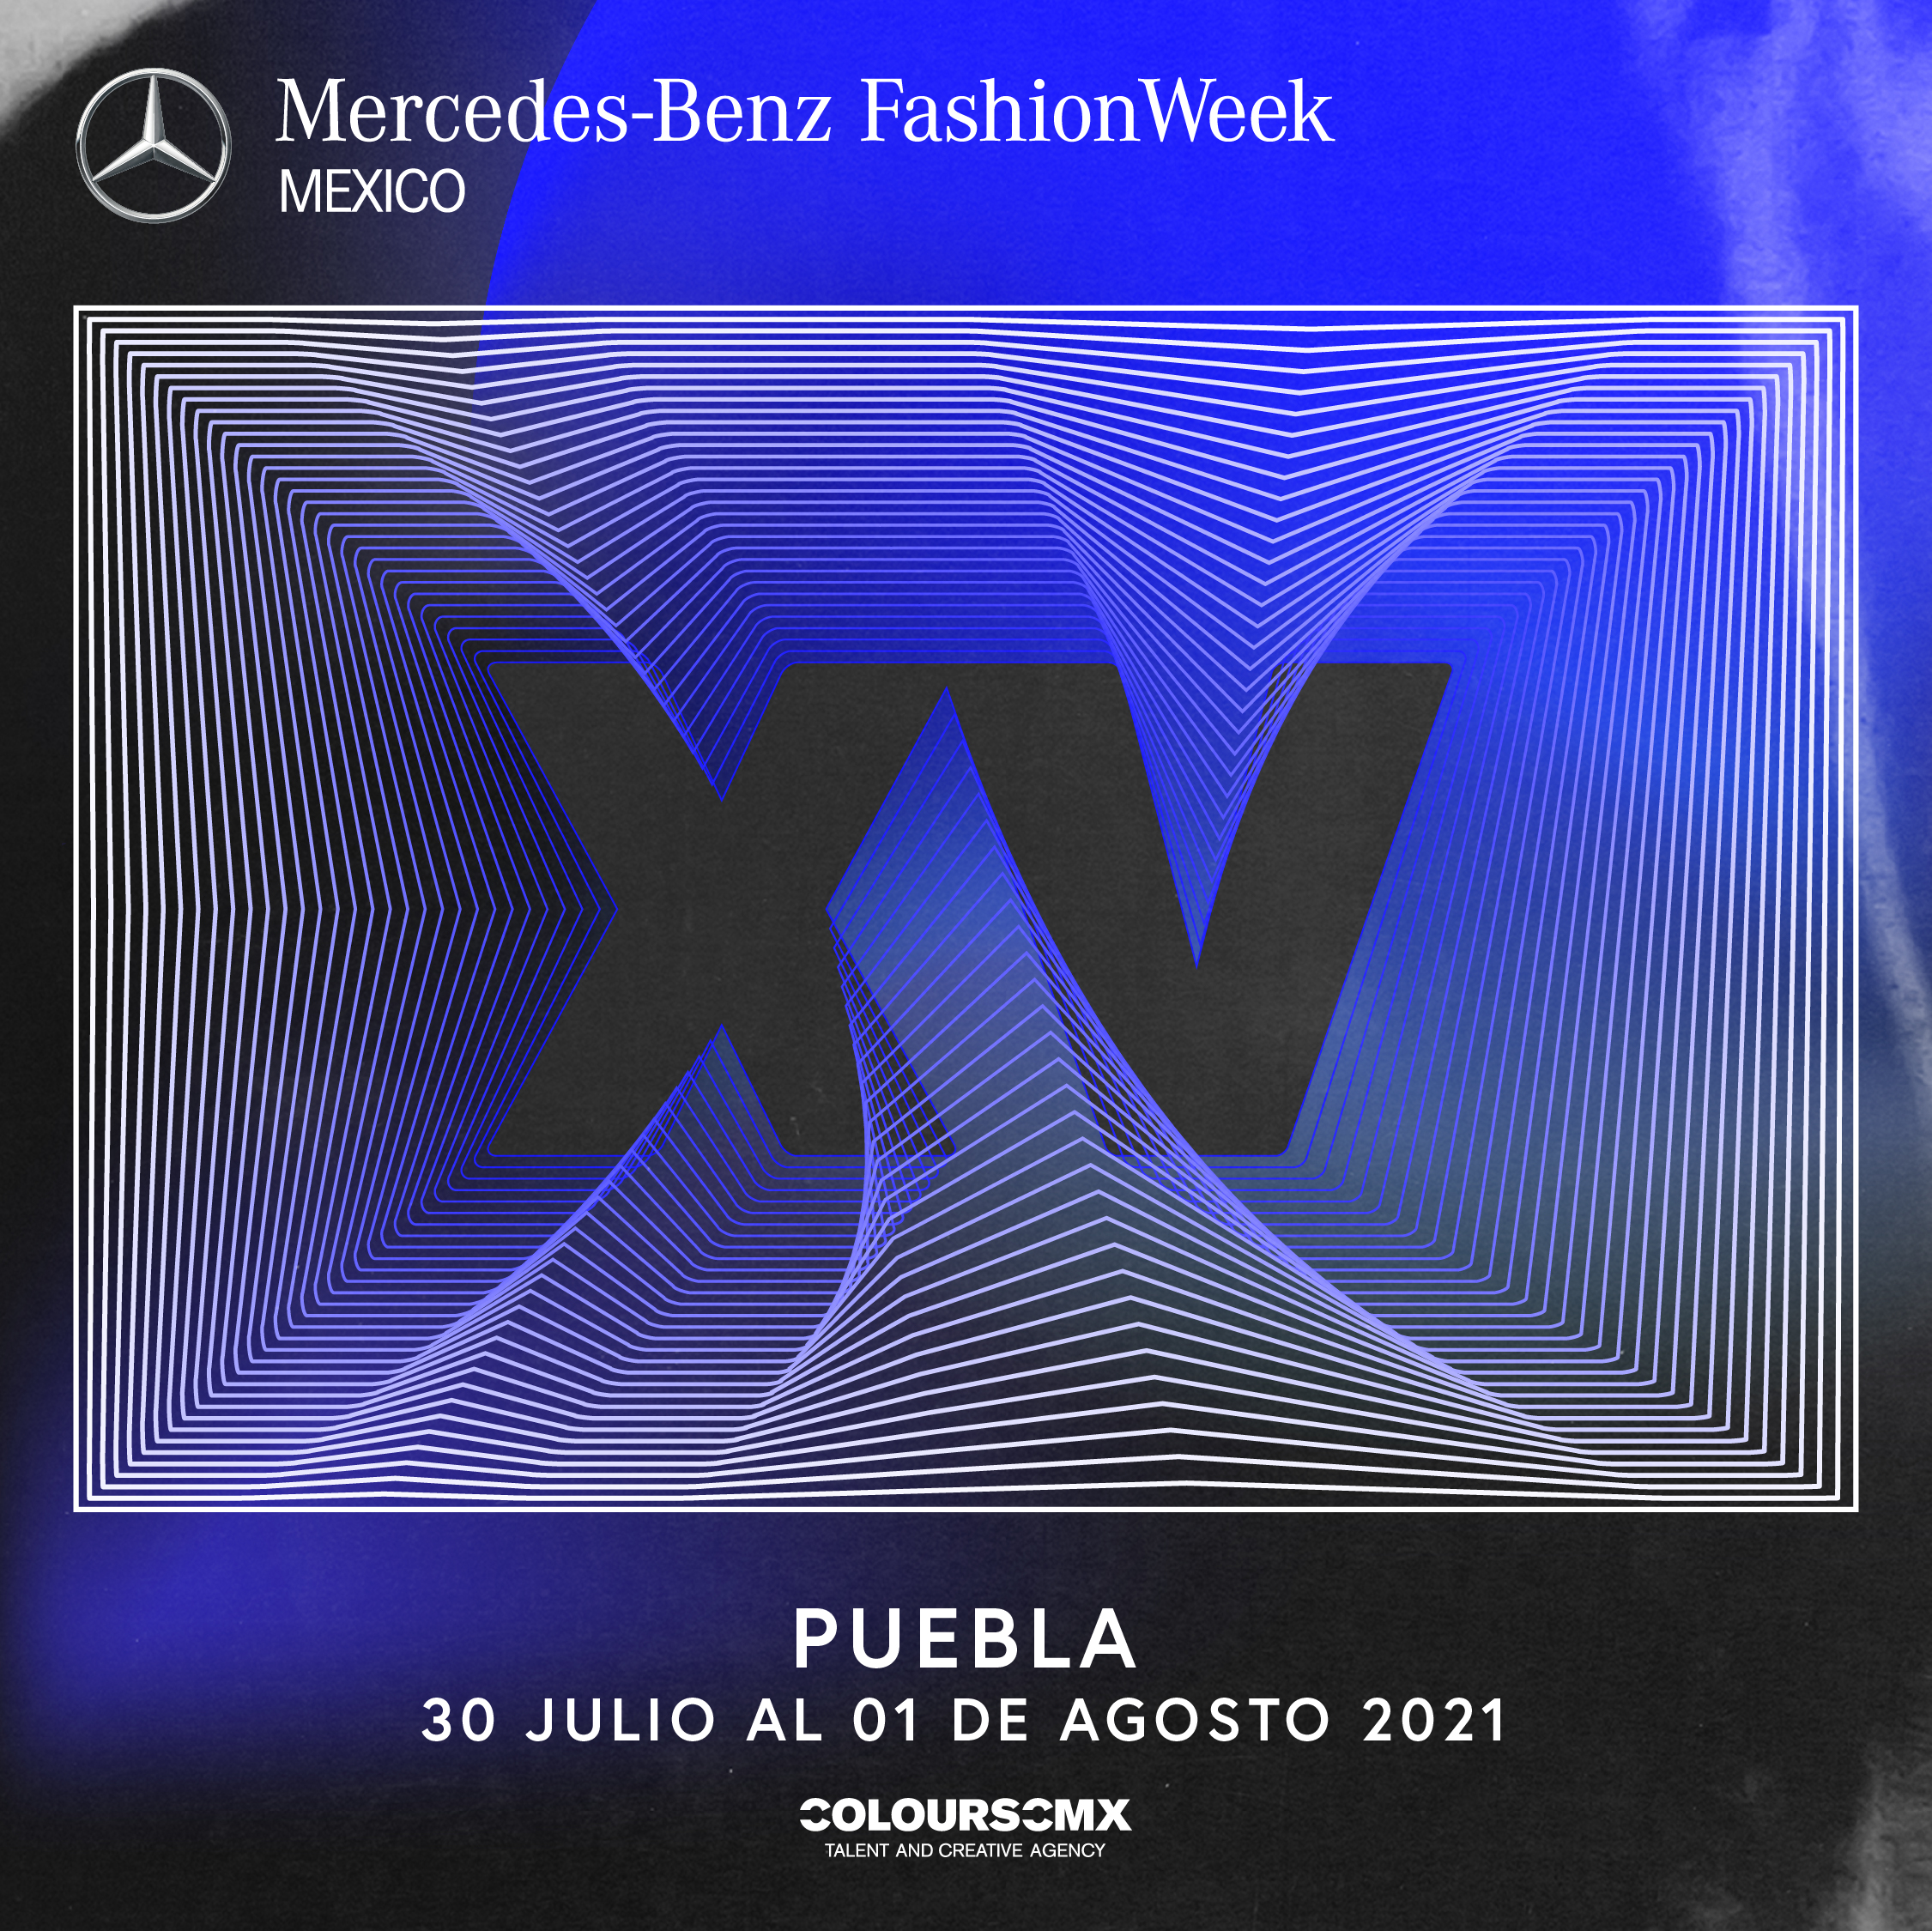 Puebla es la siguiente ciudad que visitará Mercedes-Benz Fashion Week México en el marco de celebración de sus XV años.